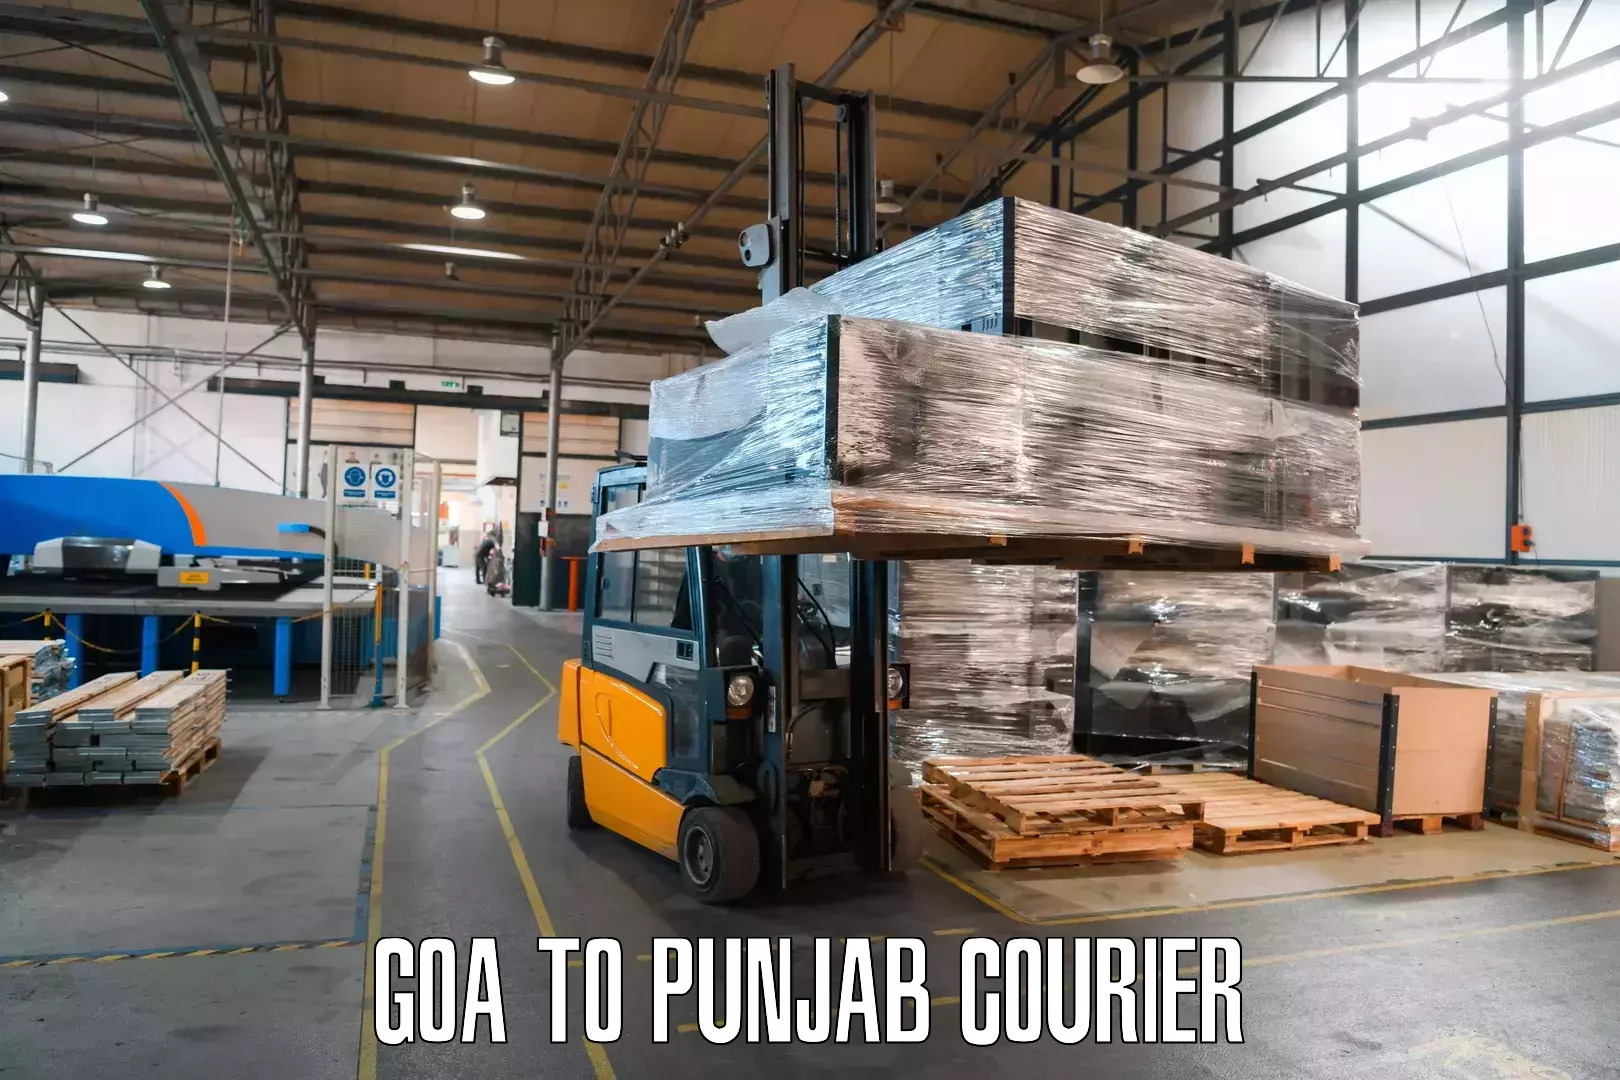 Ocean freight courier Goa to Fatehgarh Sahib